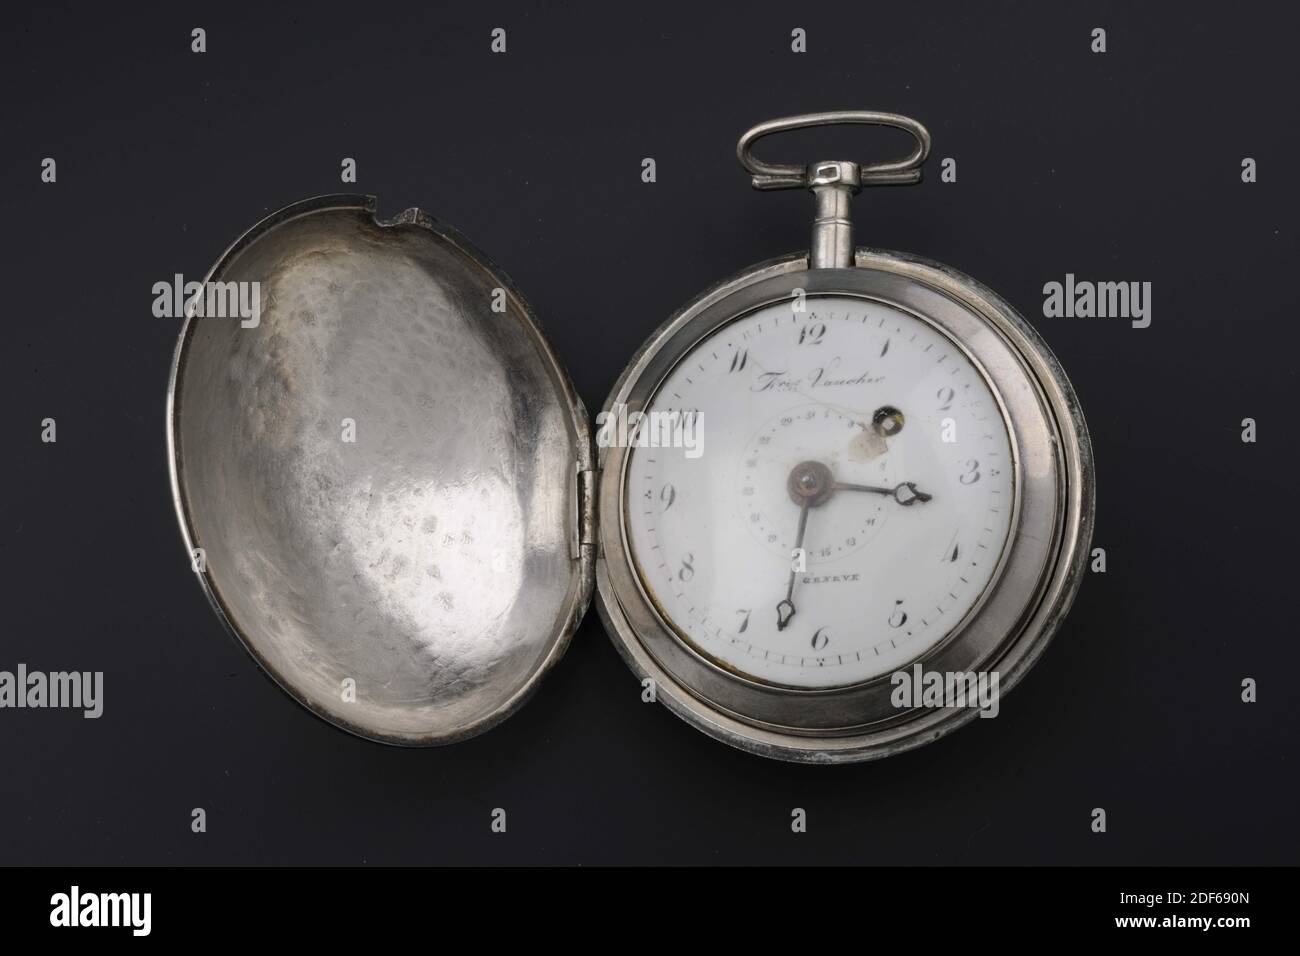 Uhr, F.res. Vaucher, 1811?, Glas, Silber, Silber Uhr in einem losen Halter.  Die Uhr hat ein weißes, rundes Zifferblatt hinter Glas. Auf dem  Zifferblatt, am äußeren Rand, die Zahlen (Arabisch) eins bis